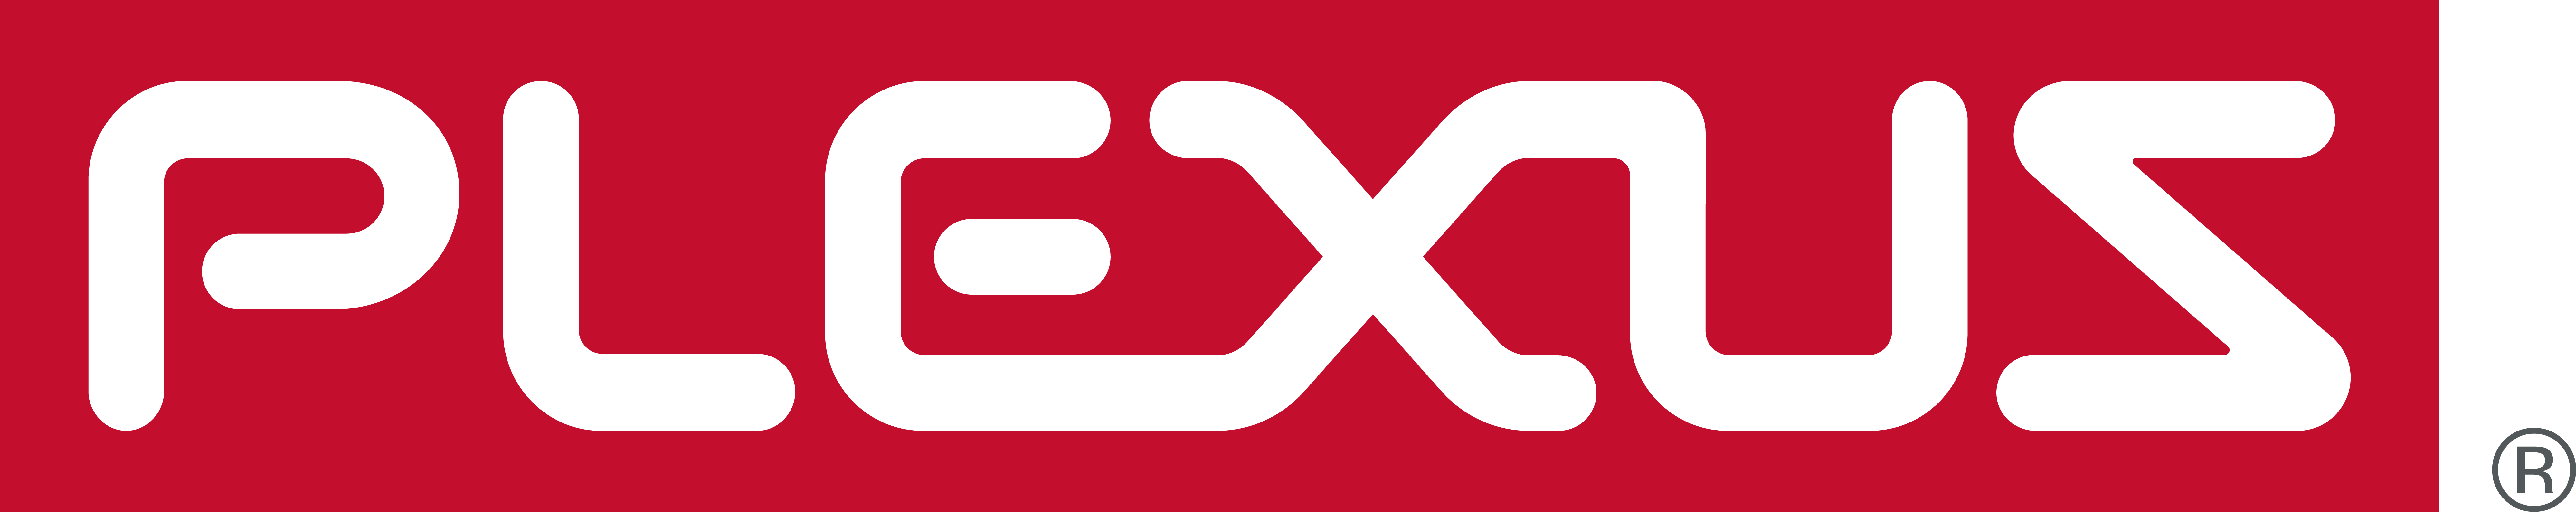 Plexus Corp.